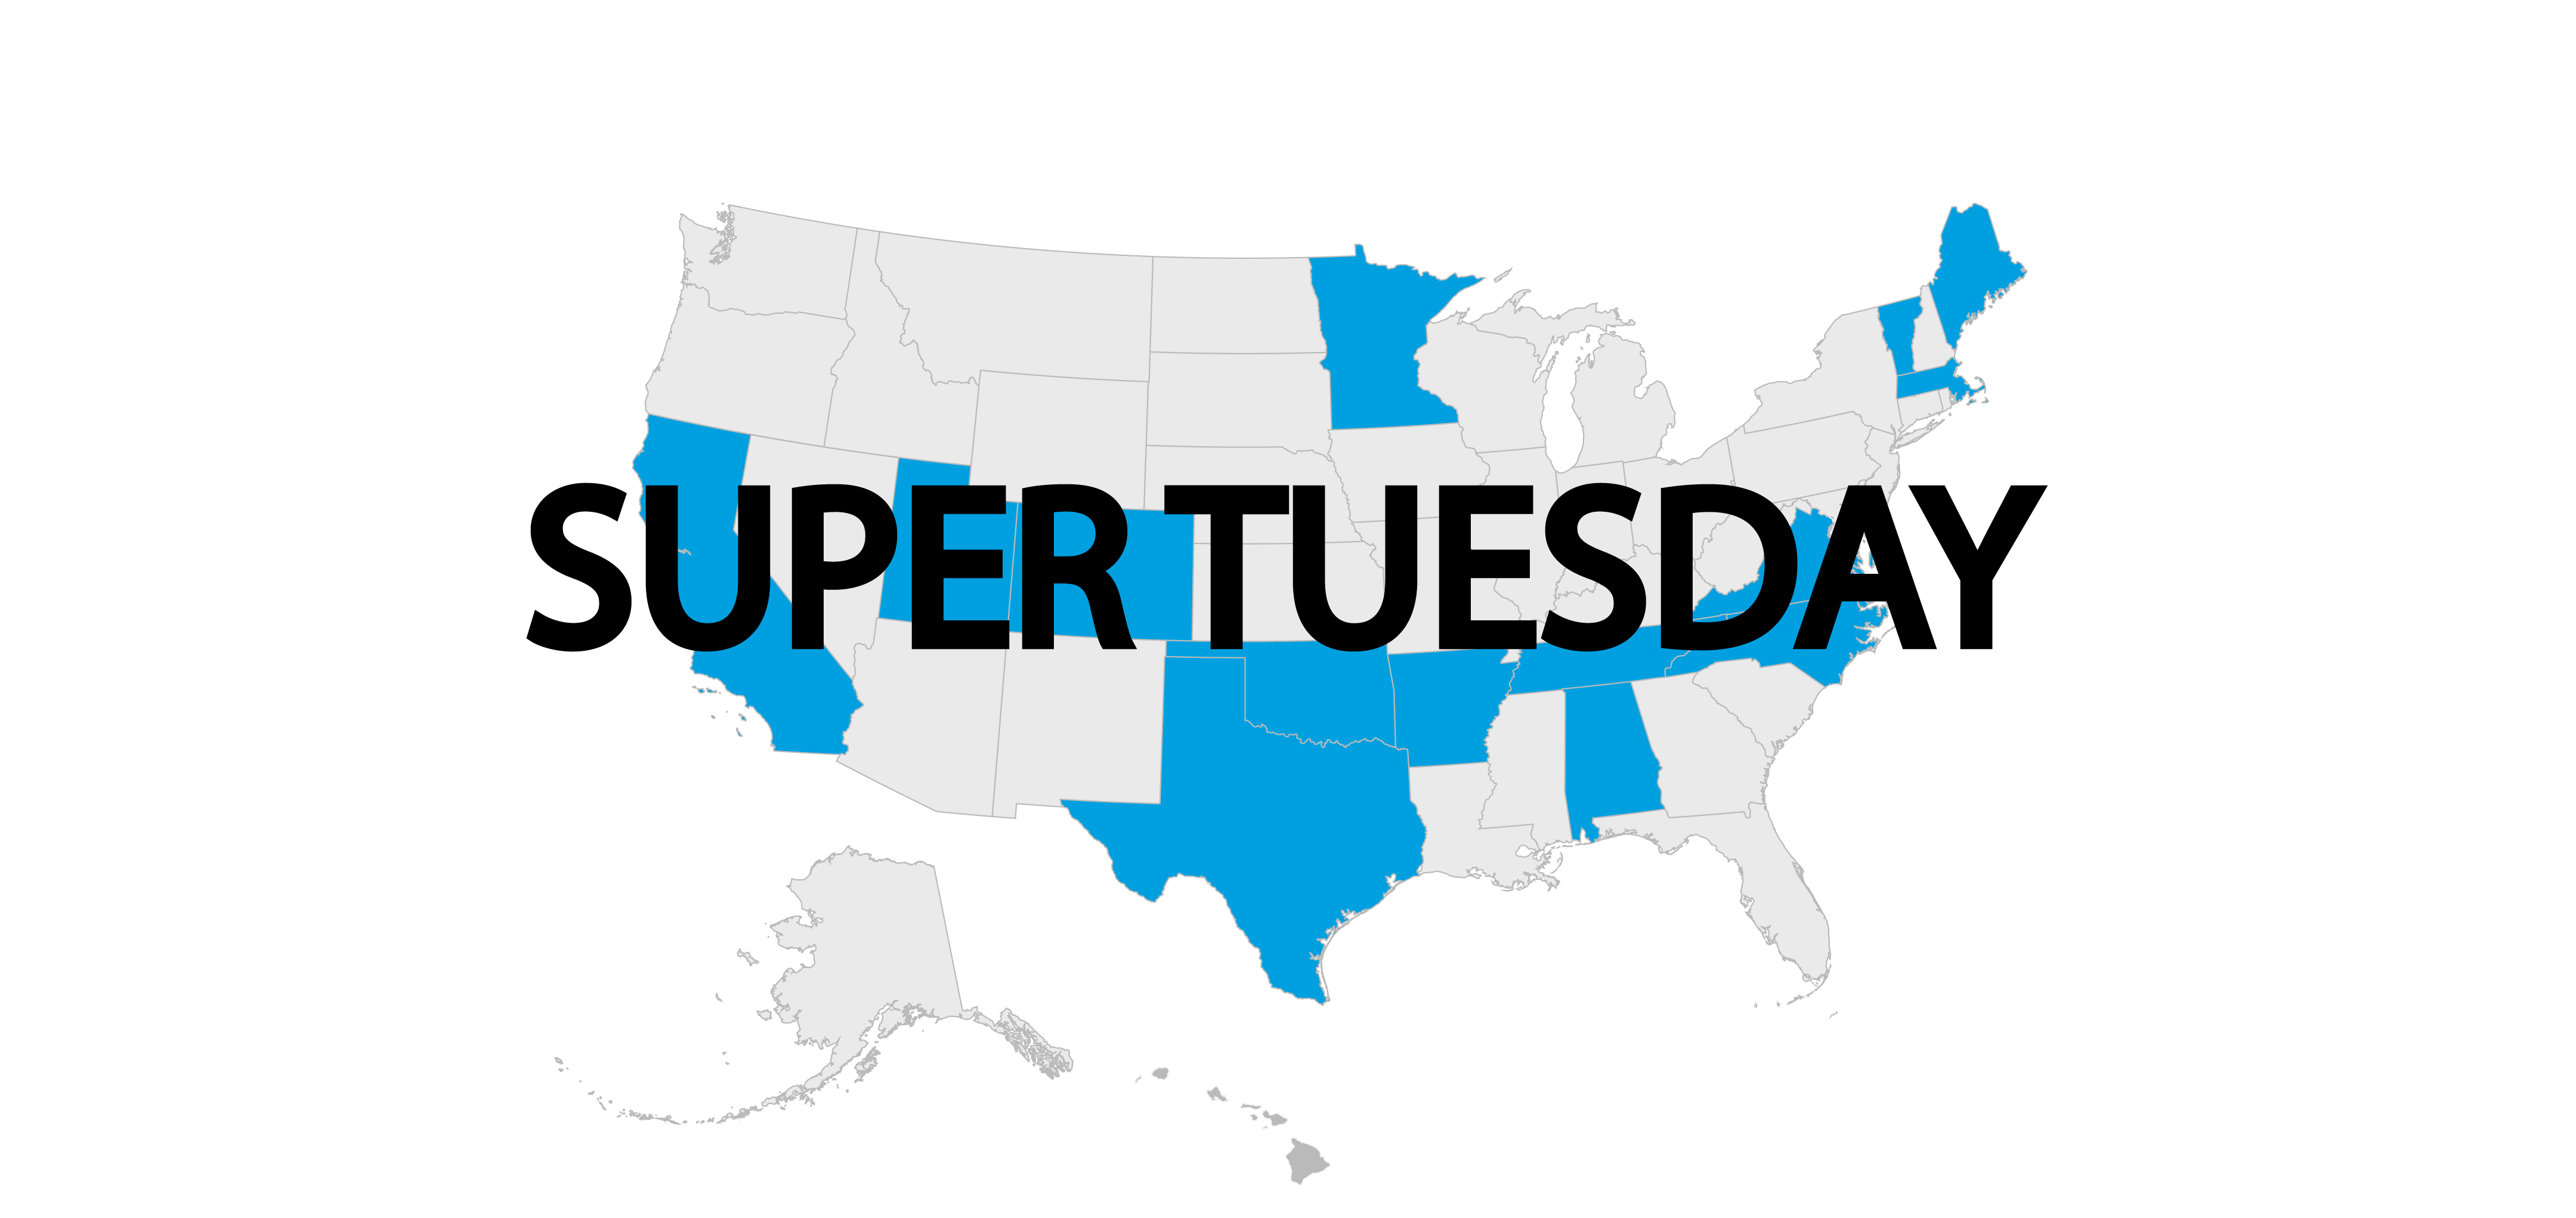 Super Tuesday - Você sabe o que isso significa?